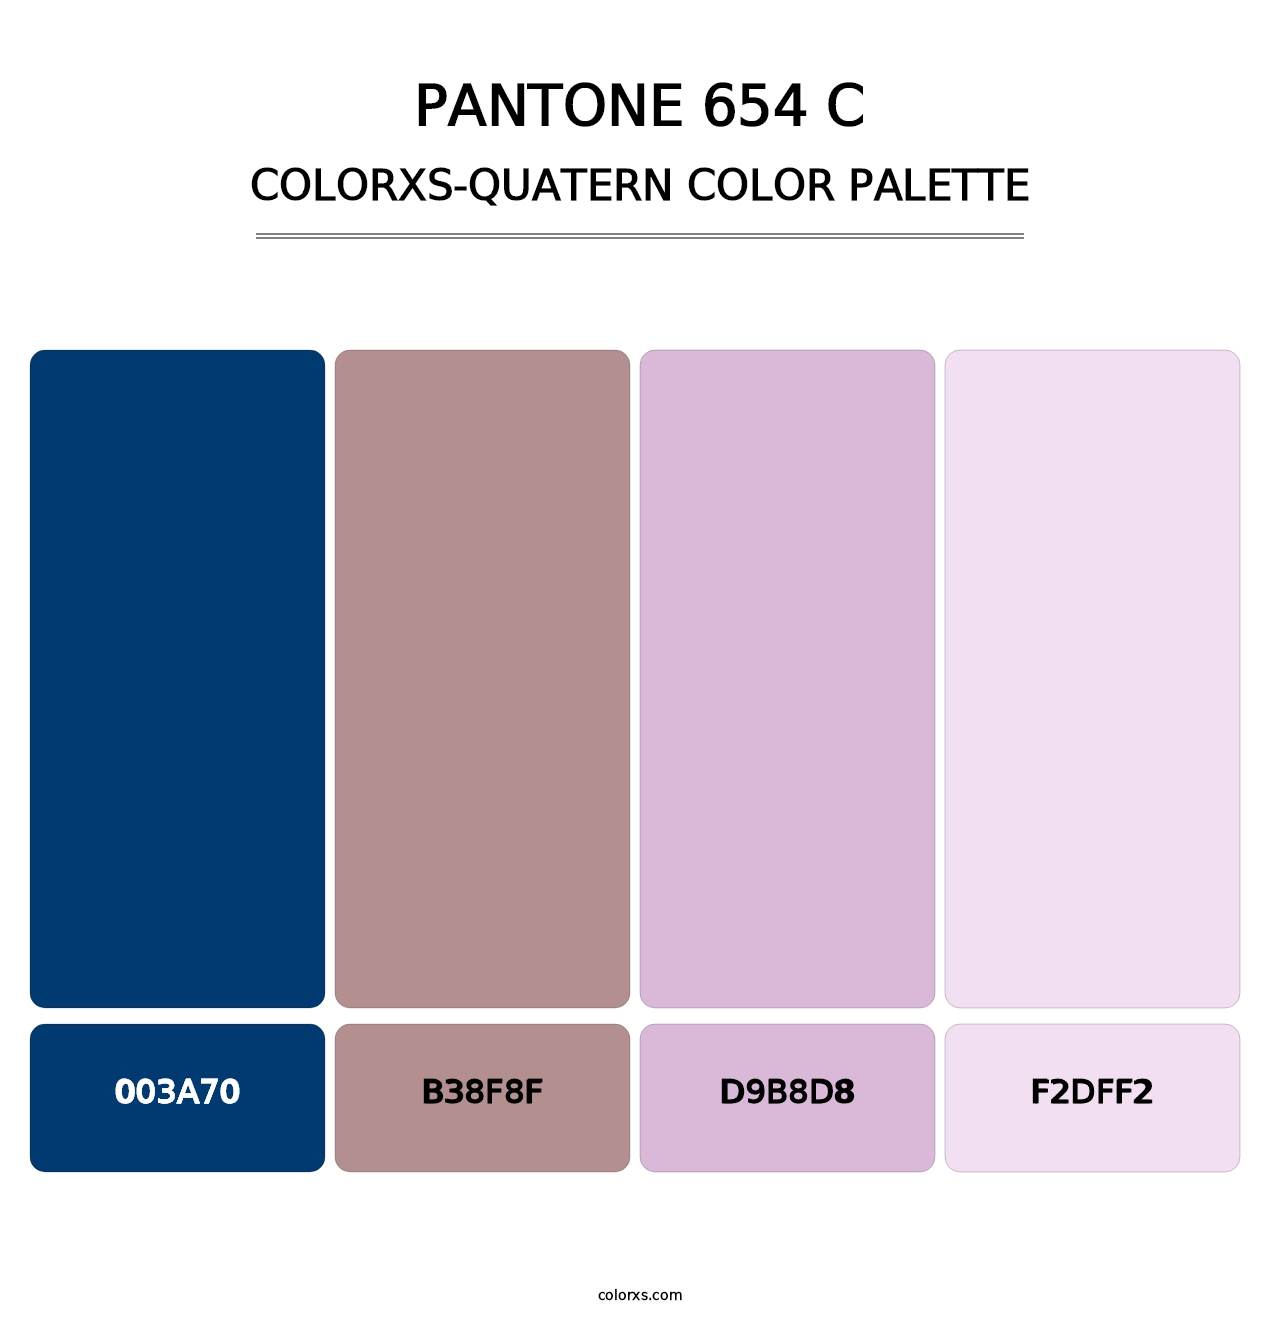 PANTONE 654 C - Colorxs Quatern Palette